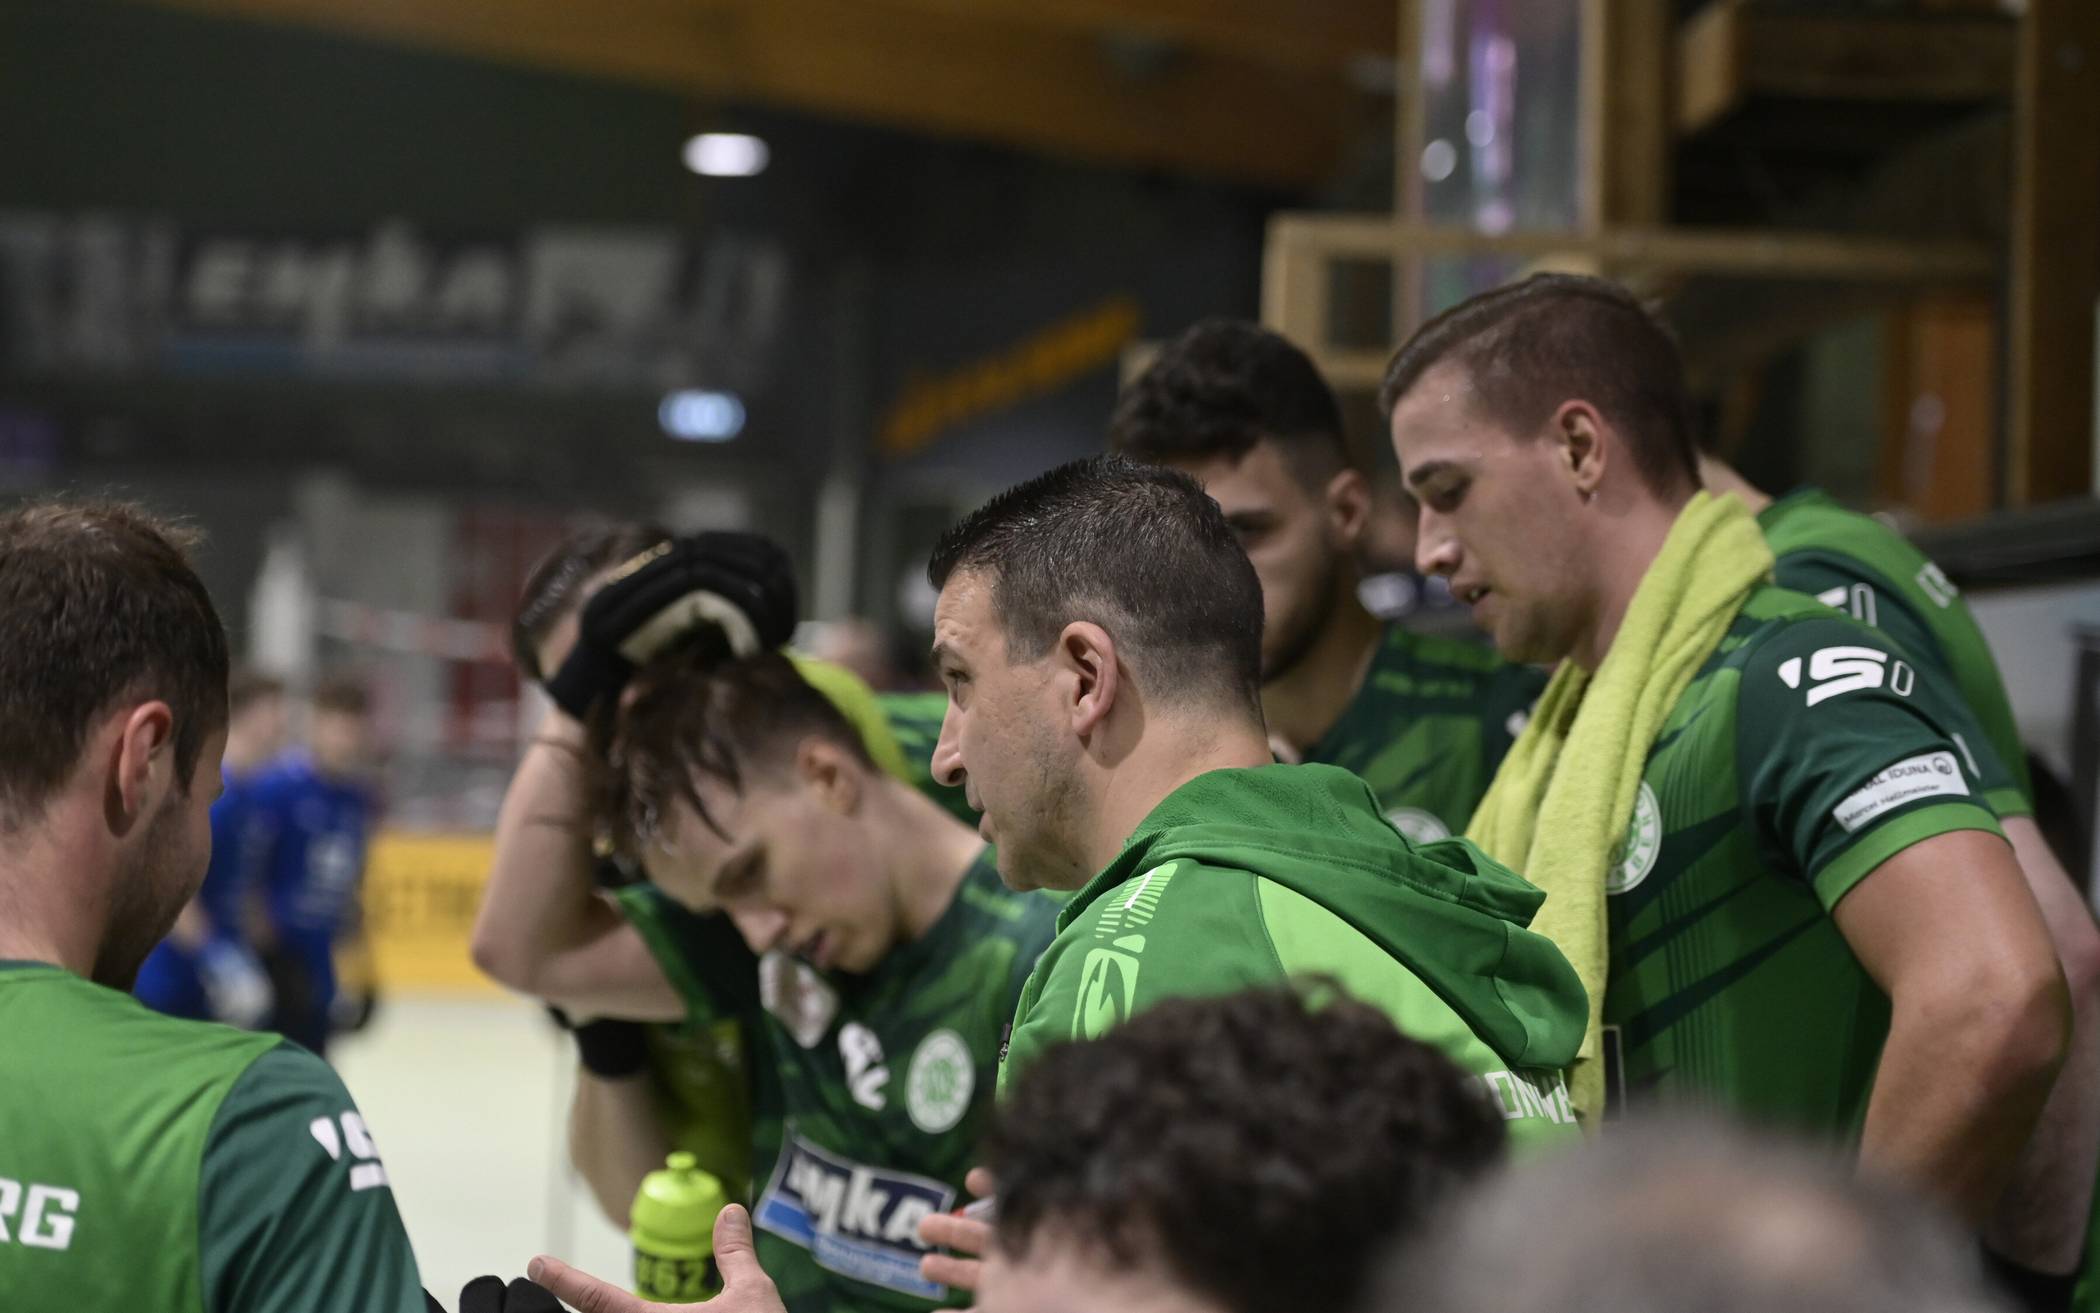  RSC-Trainer Jordi Molet trifft mit seinem Team auf Düsseldorf. 